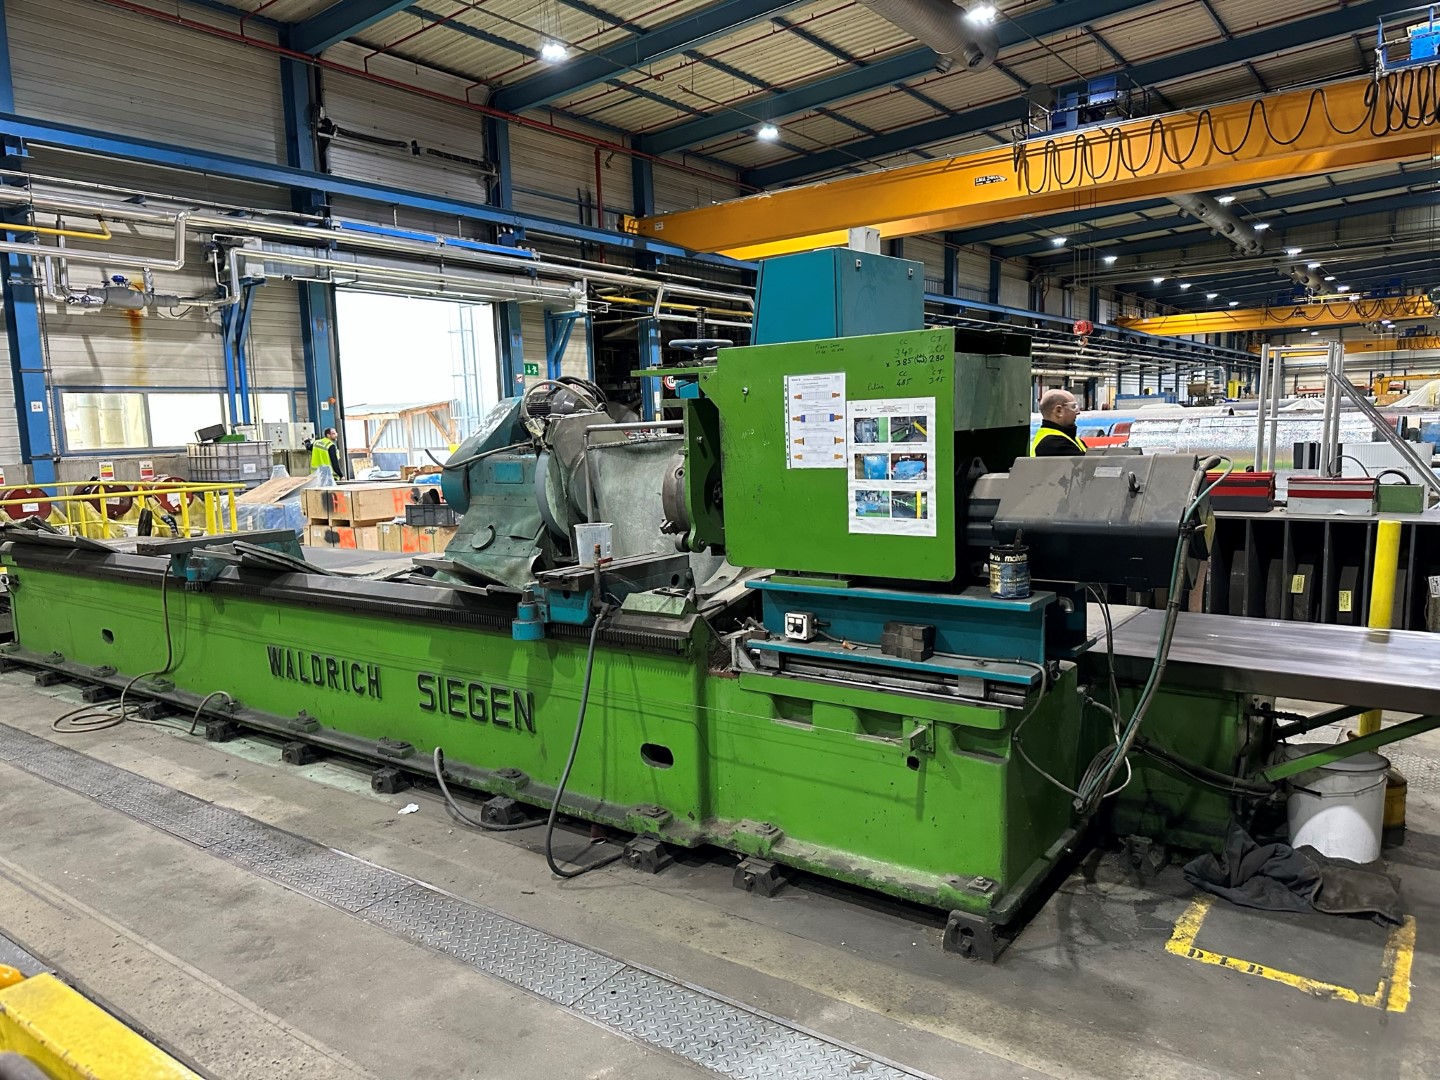 CNC Roll Grinding Machine-Waldrich Siegen